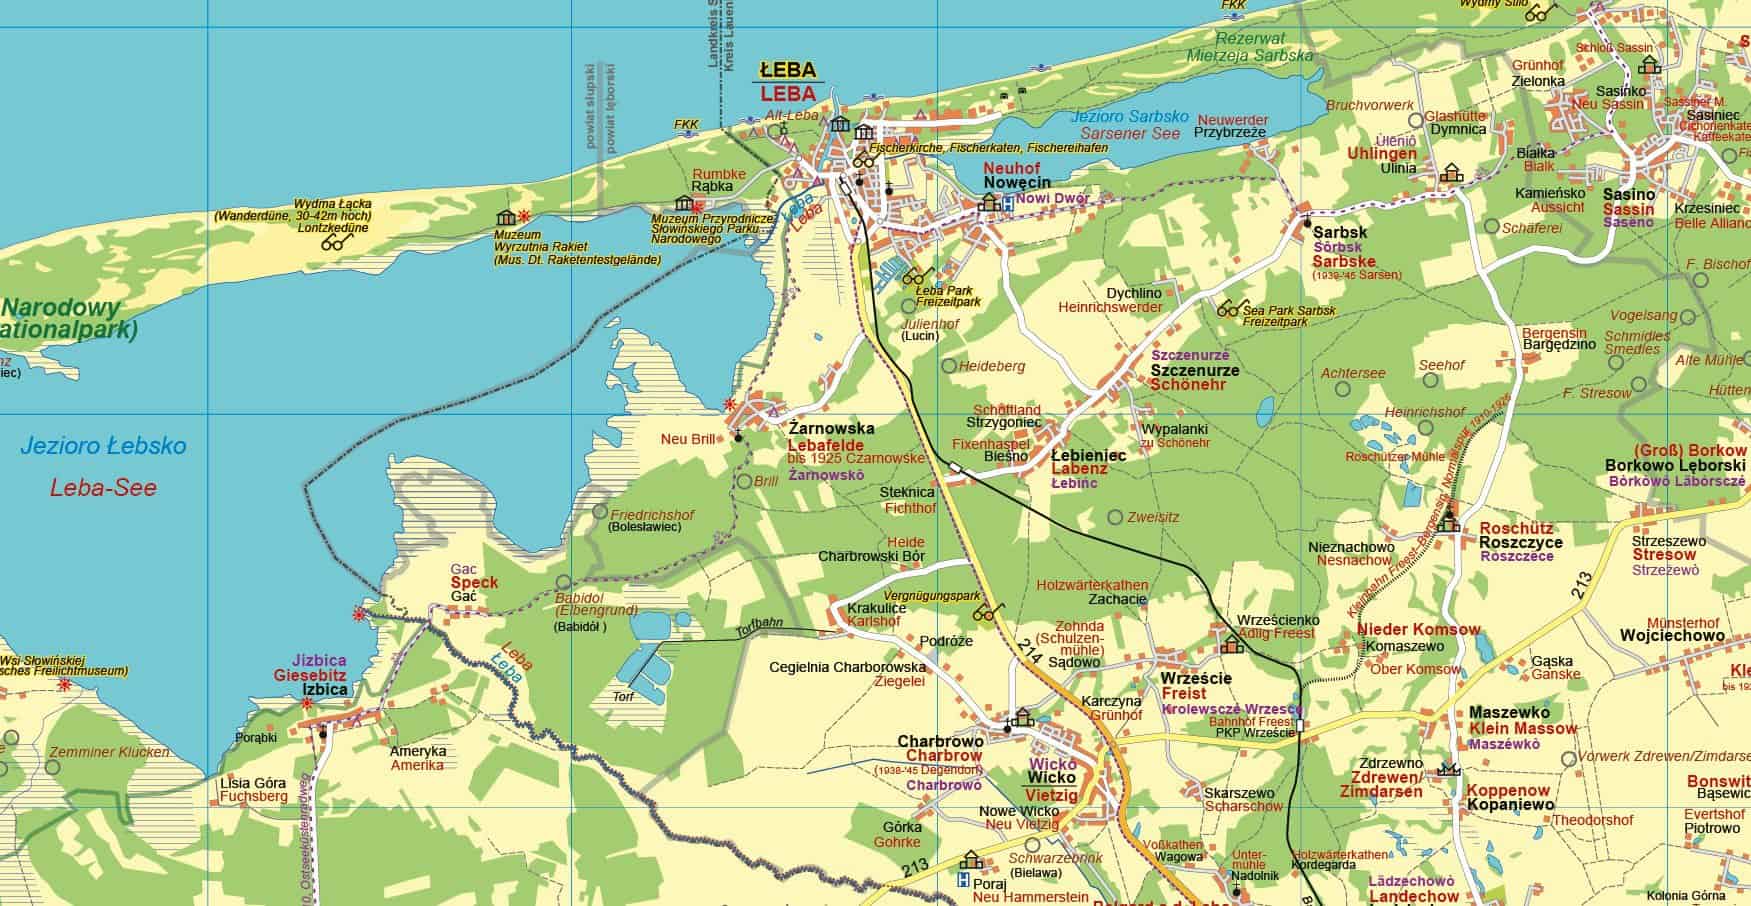 Westpreußens Ostseeküste und Hinterpommerns Osten 1:100.000